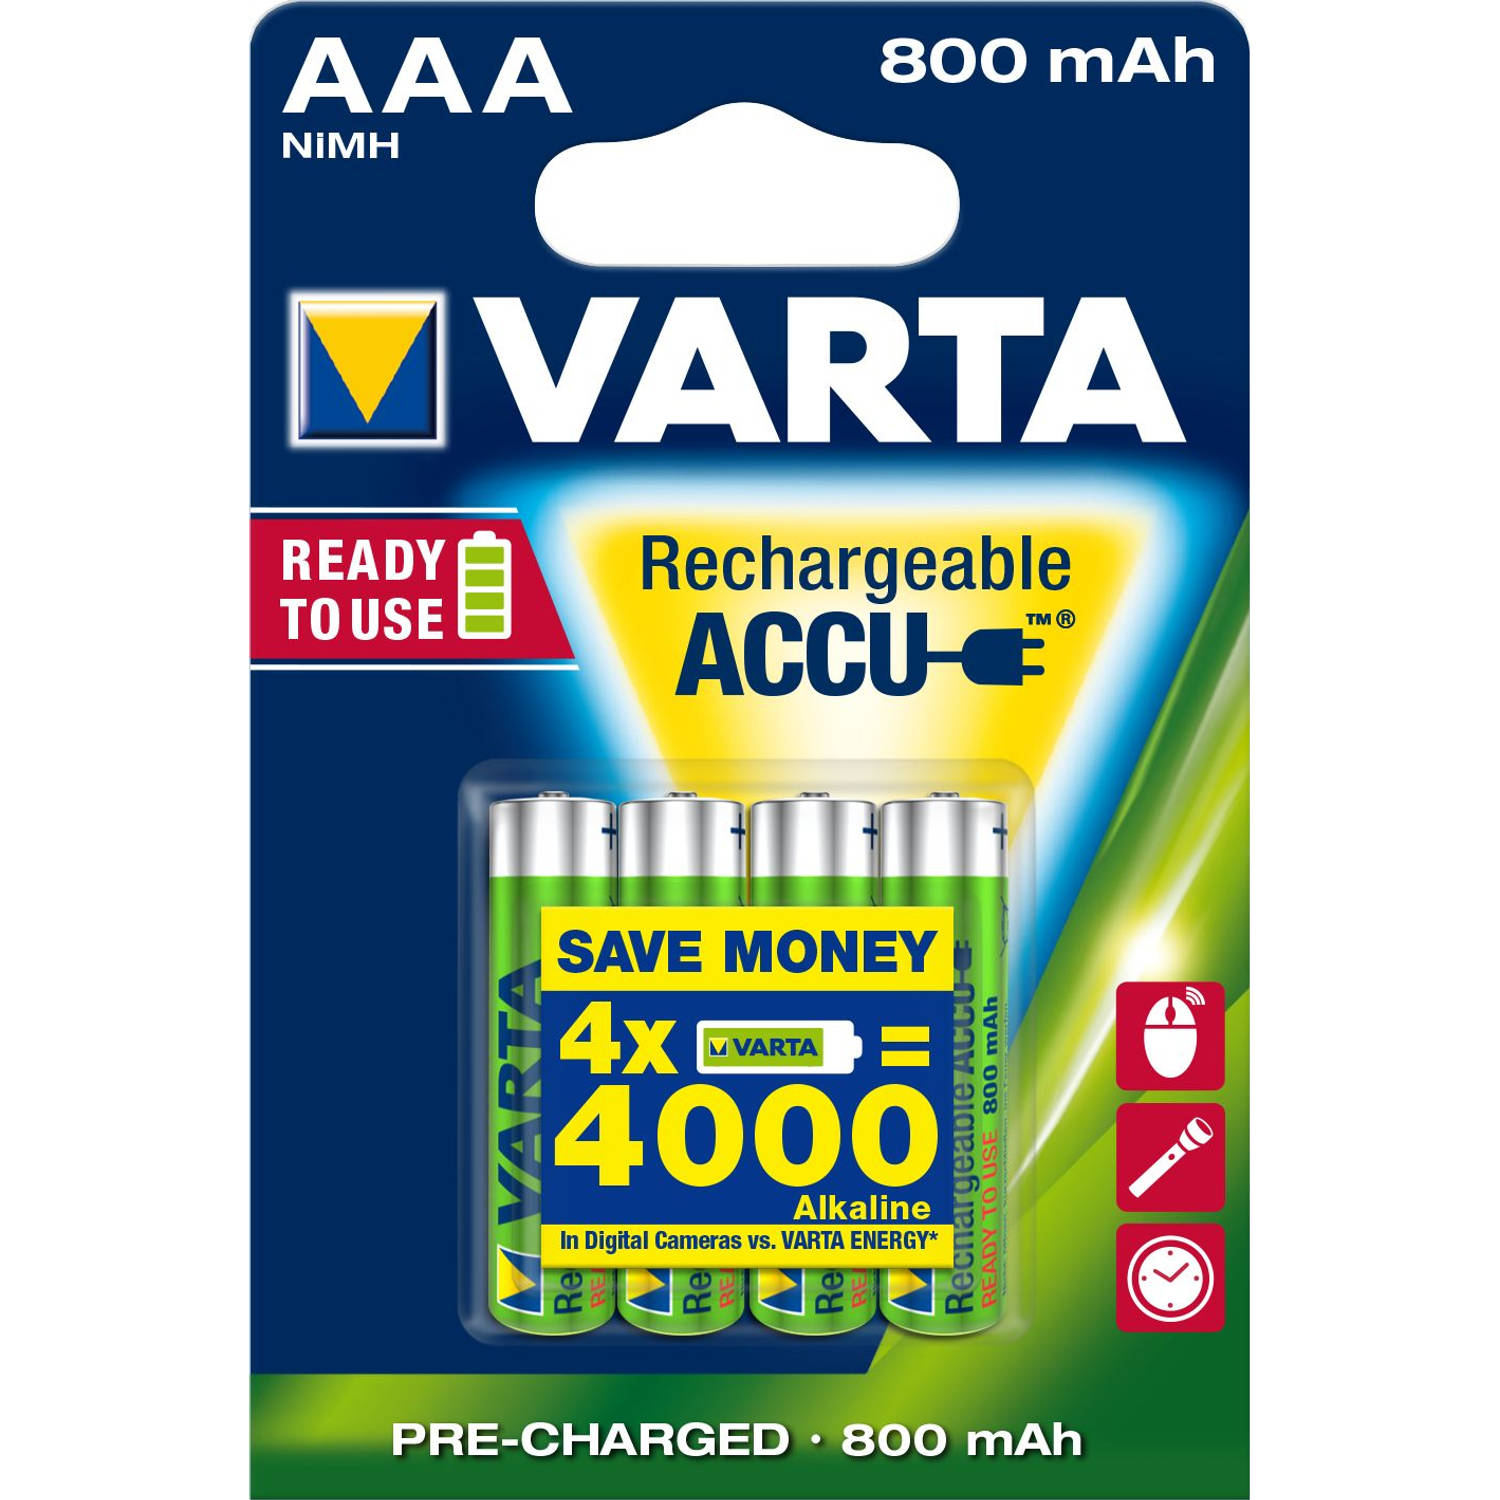 enthousiasme De kamer schoonmaken duizend Oplaadbare batterijen Varta Ready to Use AAA: 4 stuks | Blokker